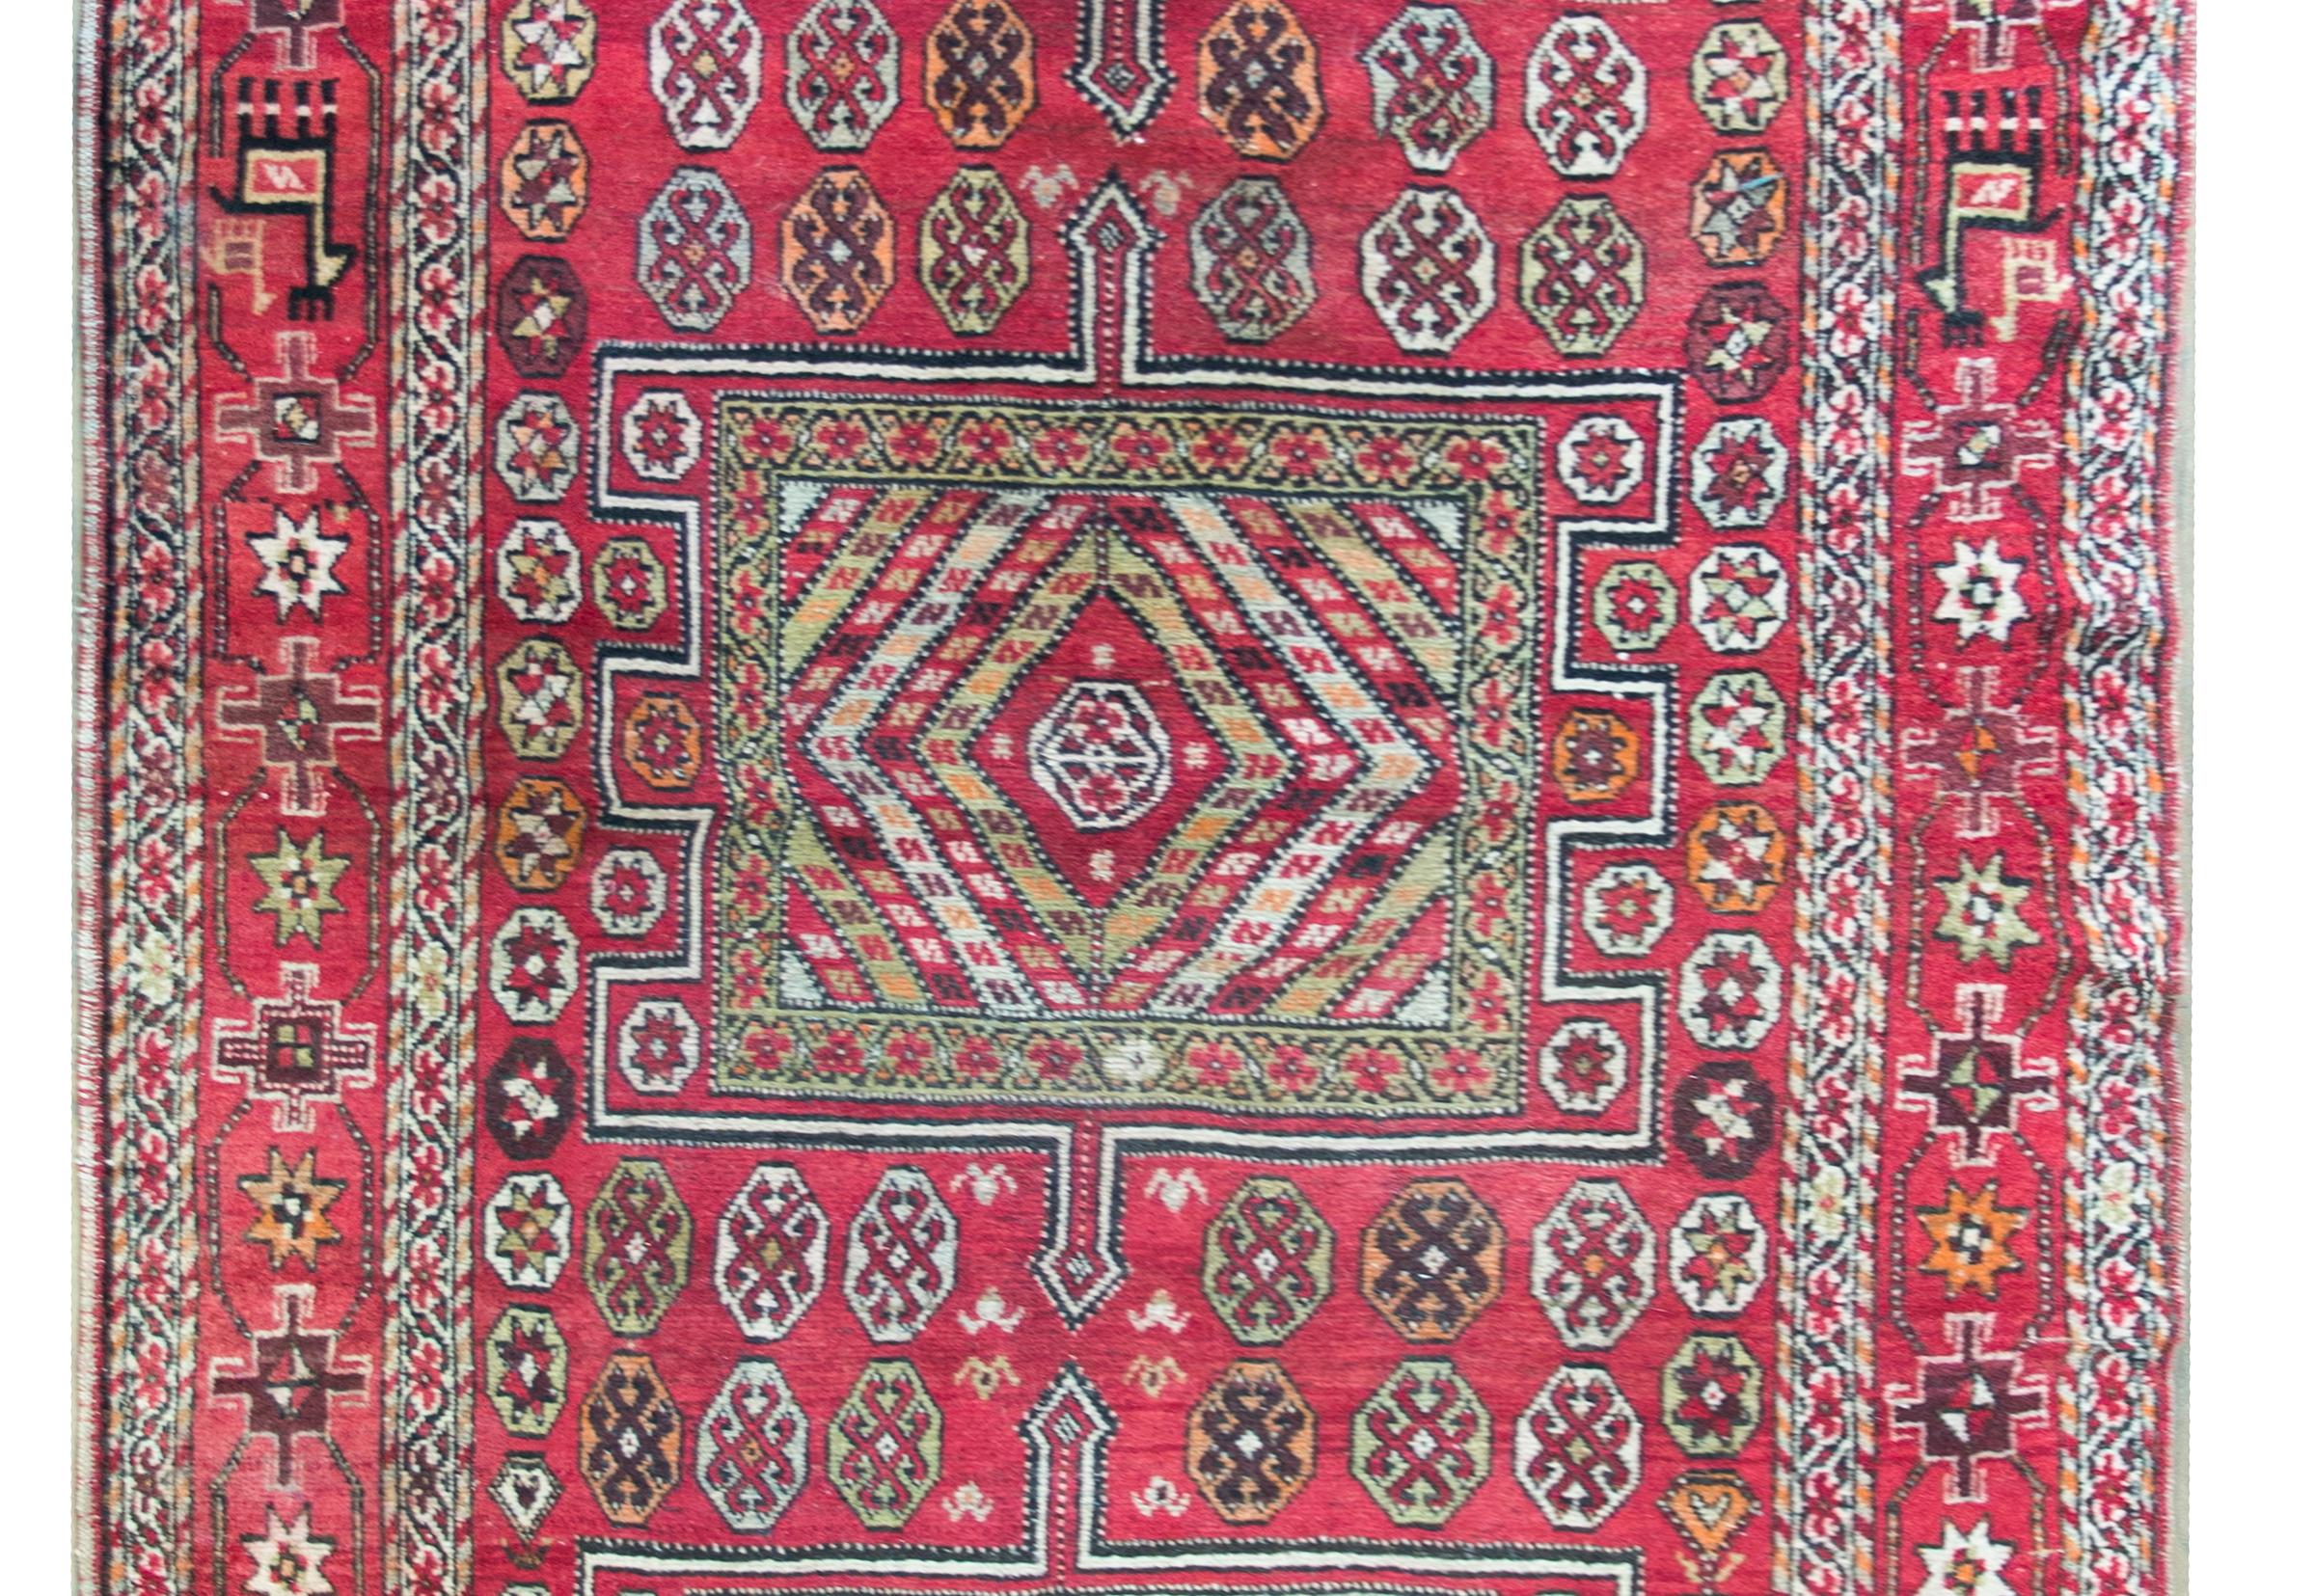 Tapis turc anatolien du début du 20e siècle, très ludique, avec trois grands médaillons géométriques vivant au milieu d'un champ de fleurs stylisées, entourés de plusieurs fines bandes à motifs floraux, le tout tissé dans des laines brillantes